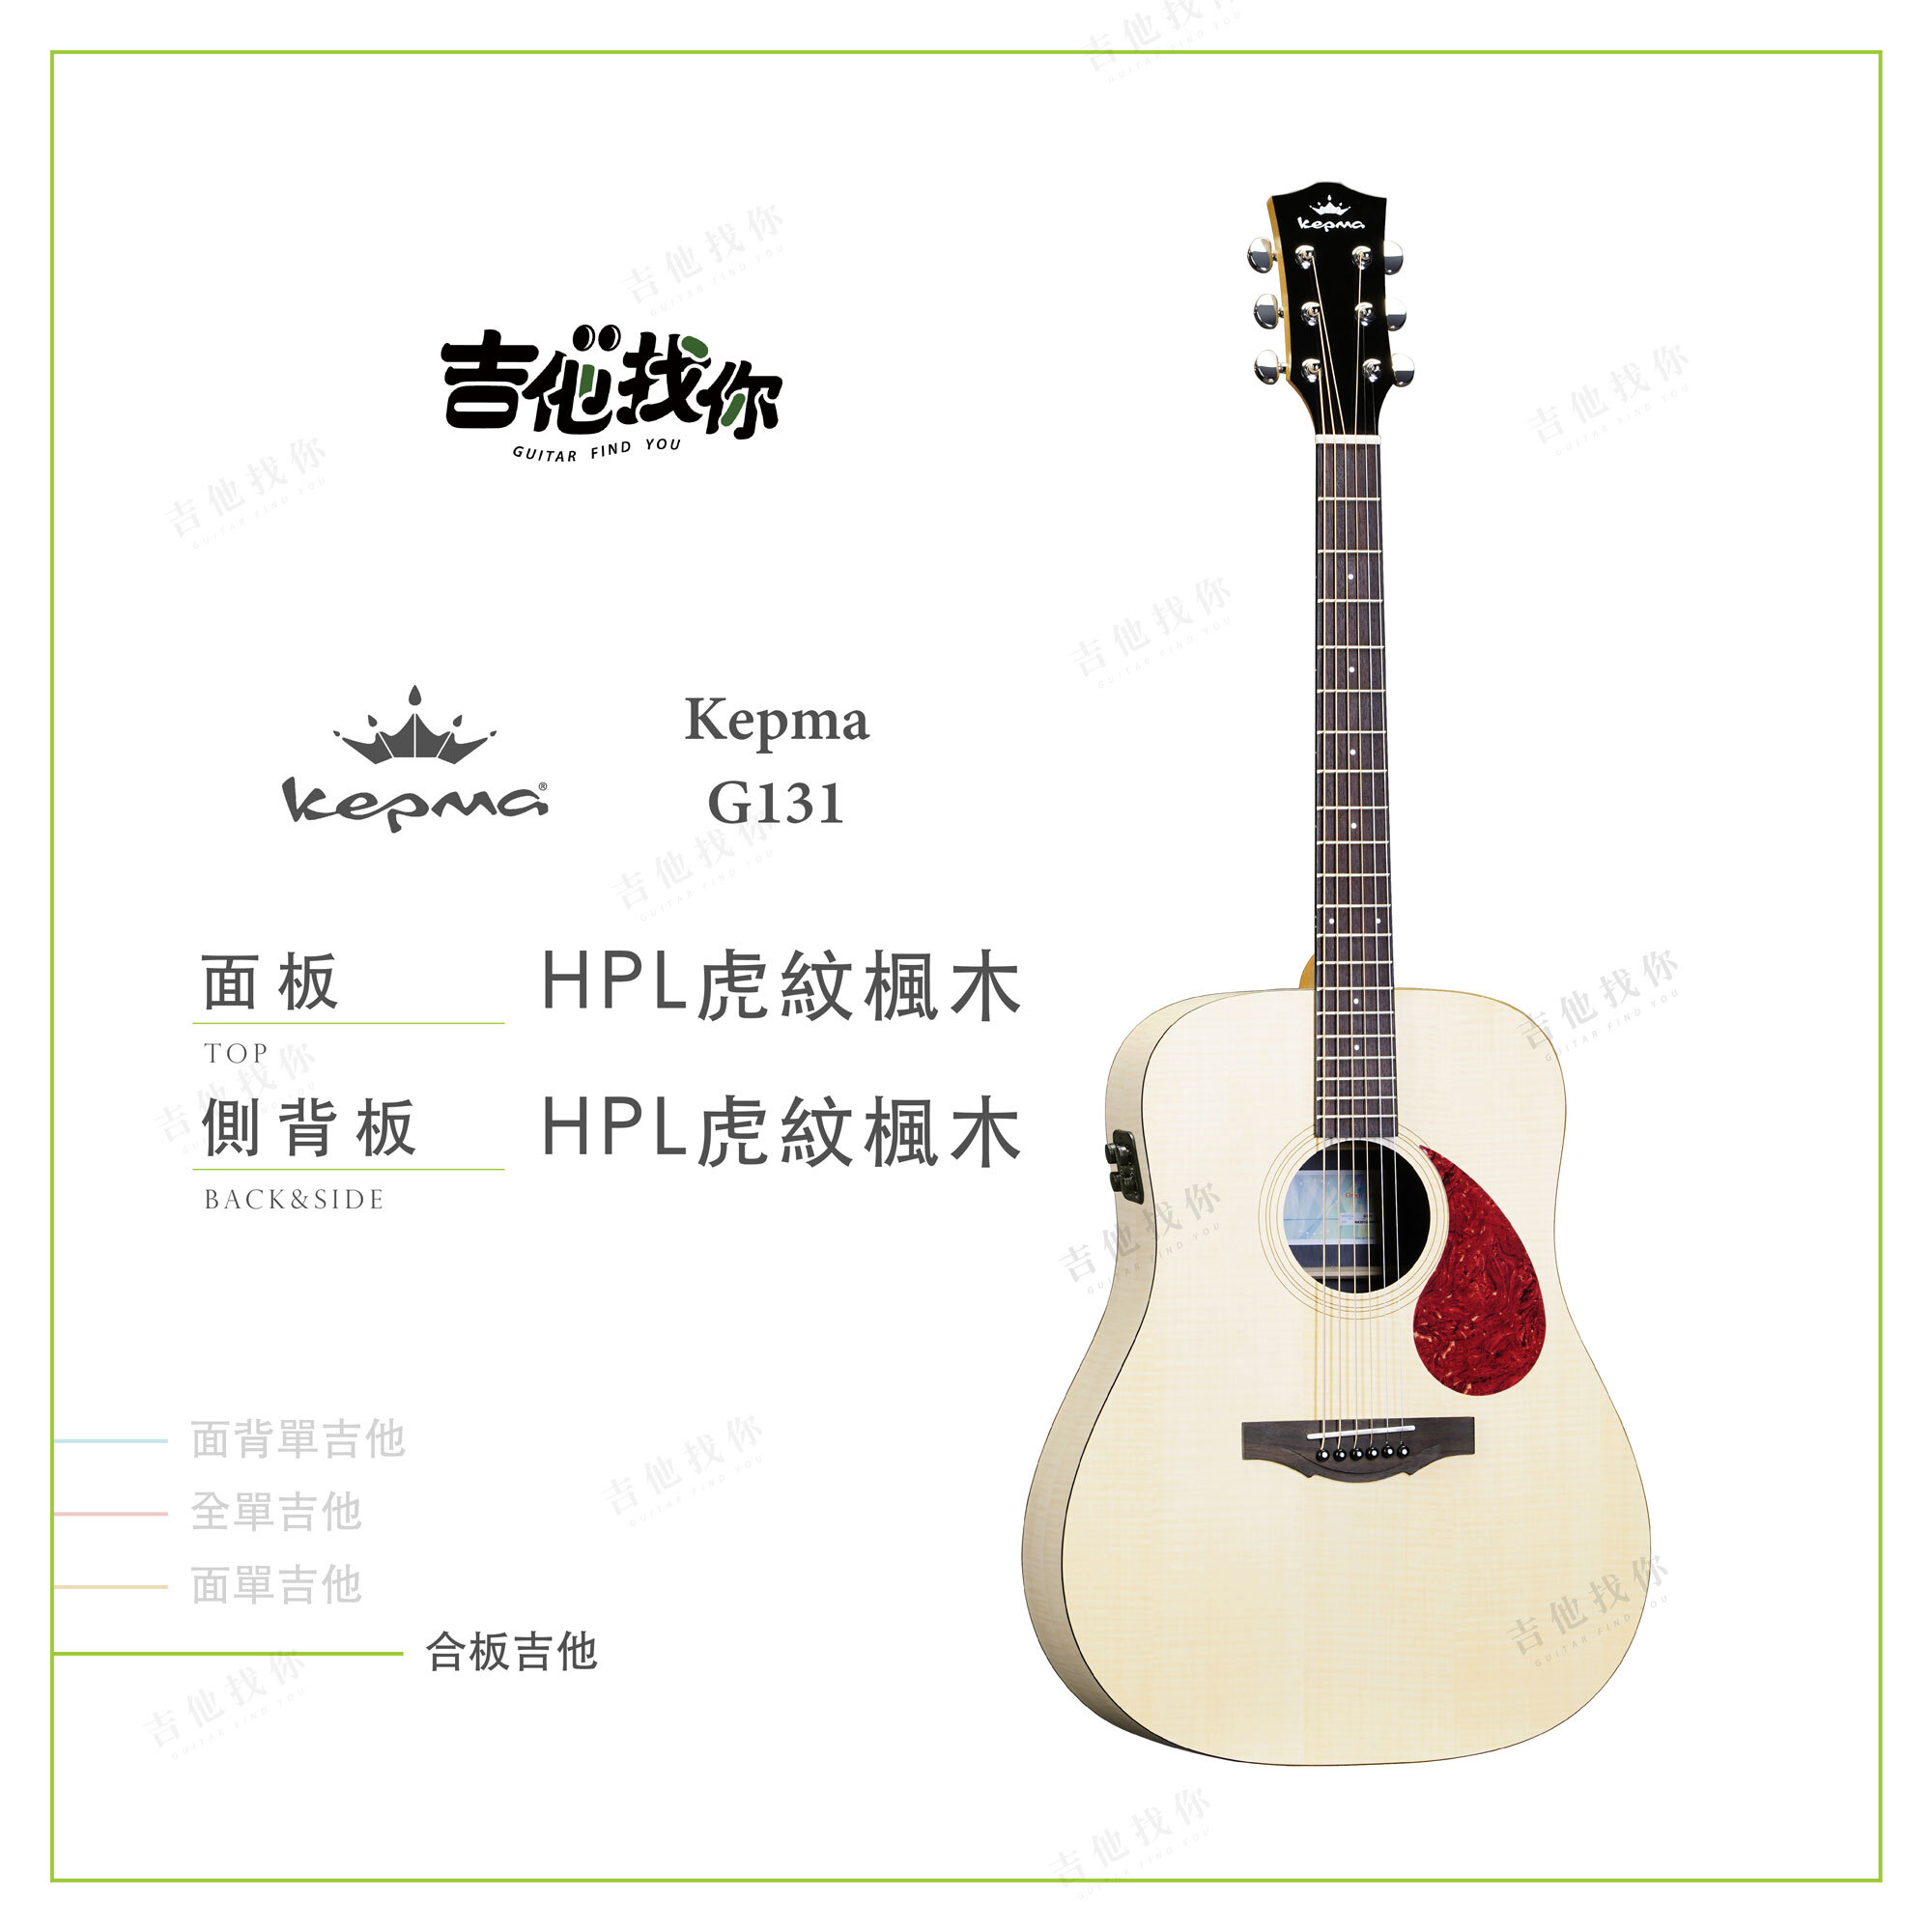 Kepma吉他商品圖_工作區域-1-複本